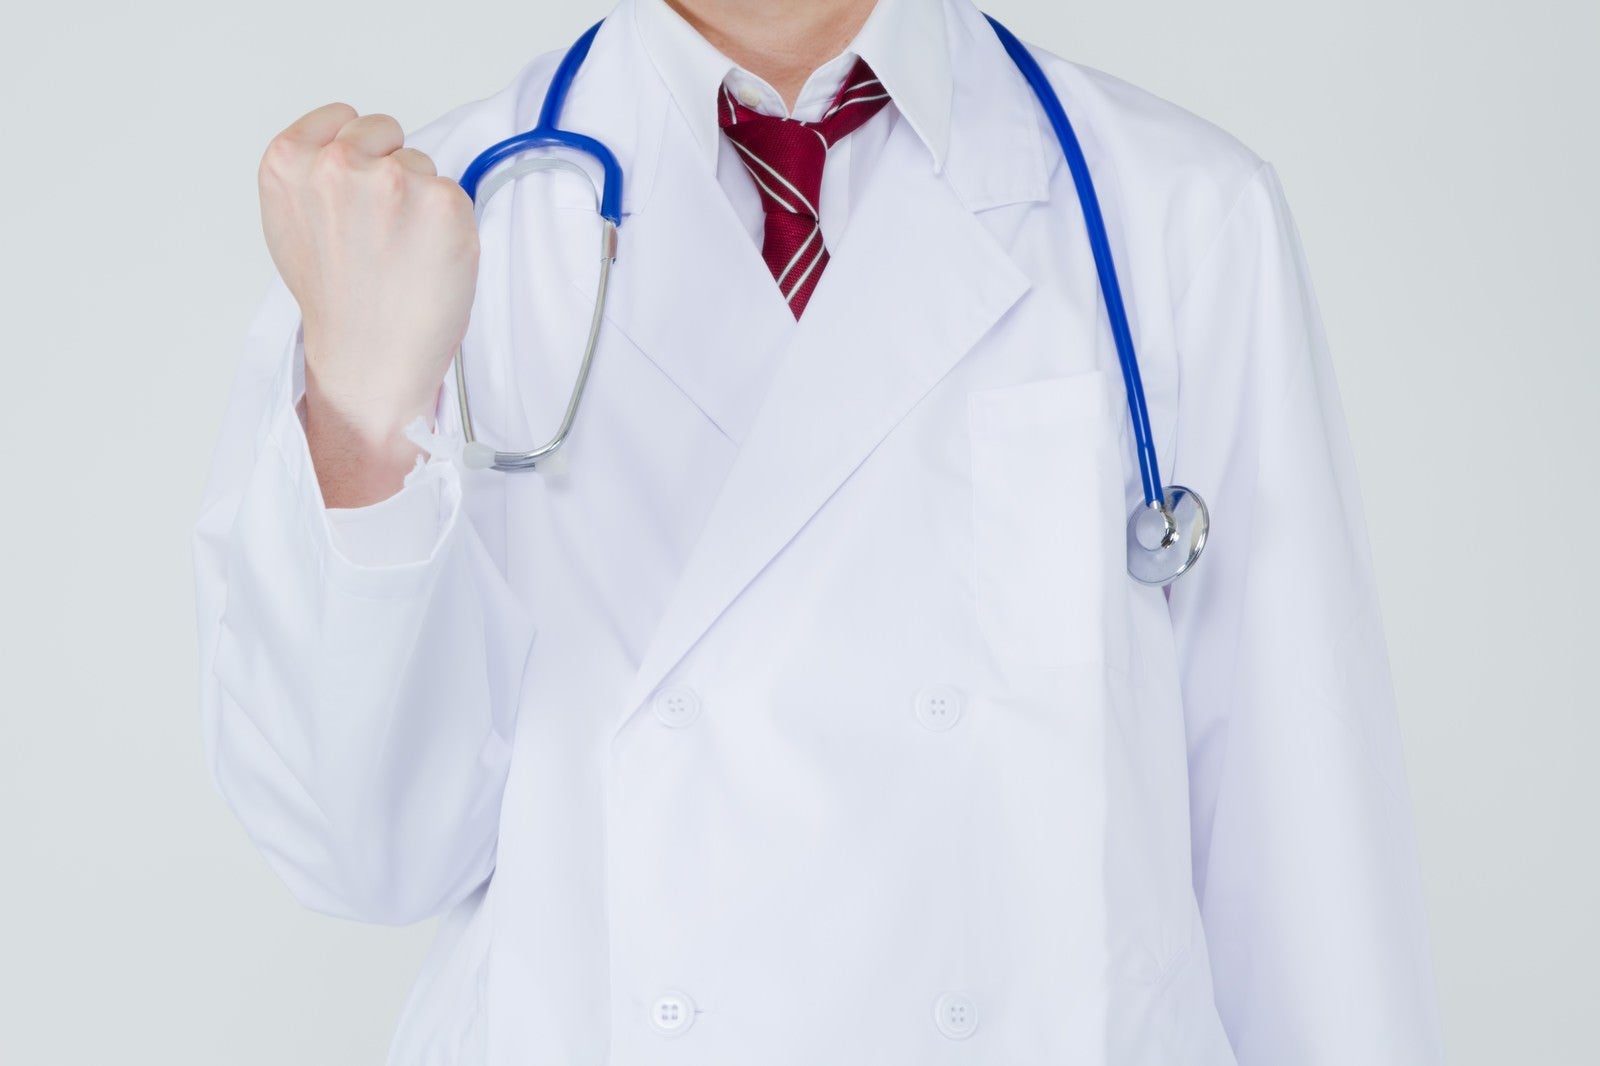 「白衣を着た医者から励まされる」の写真